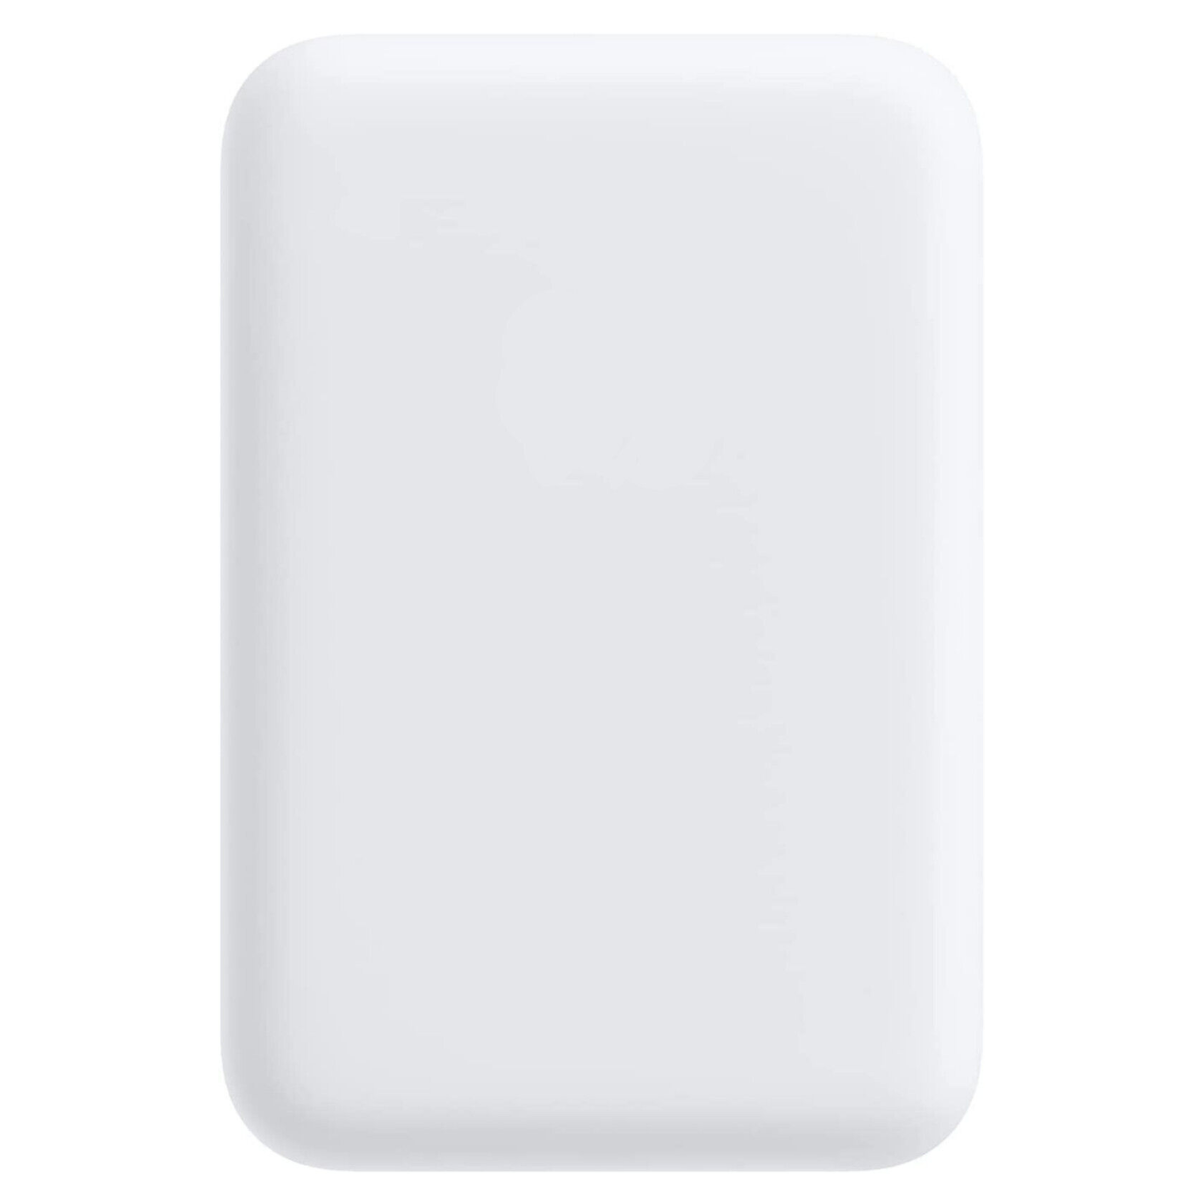 Magnetisch iPhone Magsafe FIRELIA Ladegerät Weiß Induktion Battery Powerbank Für Powerbank Pack Akku 5000 mAh